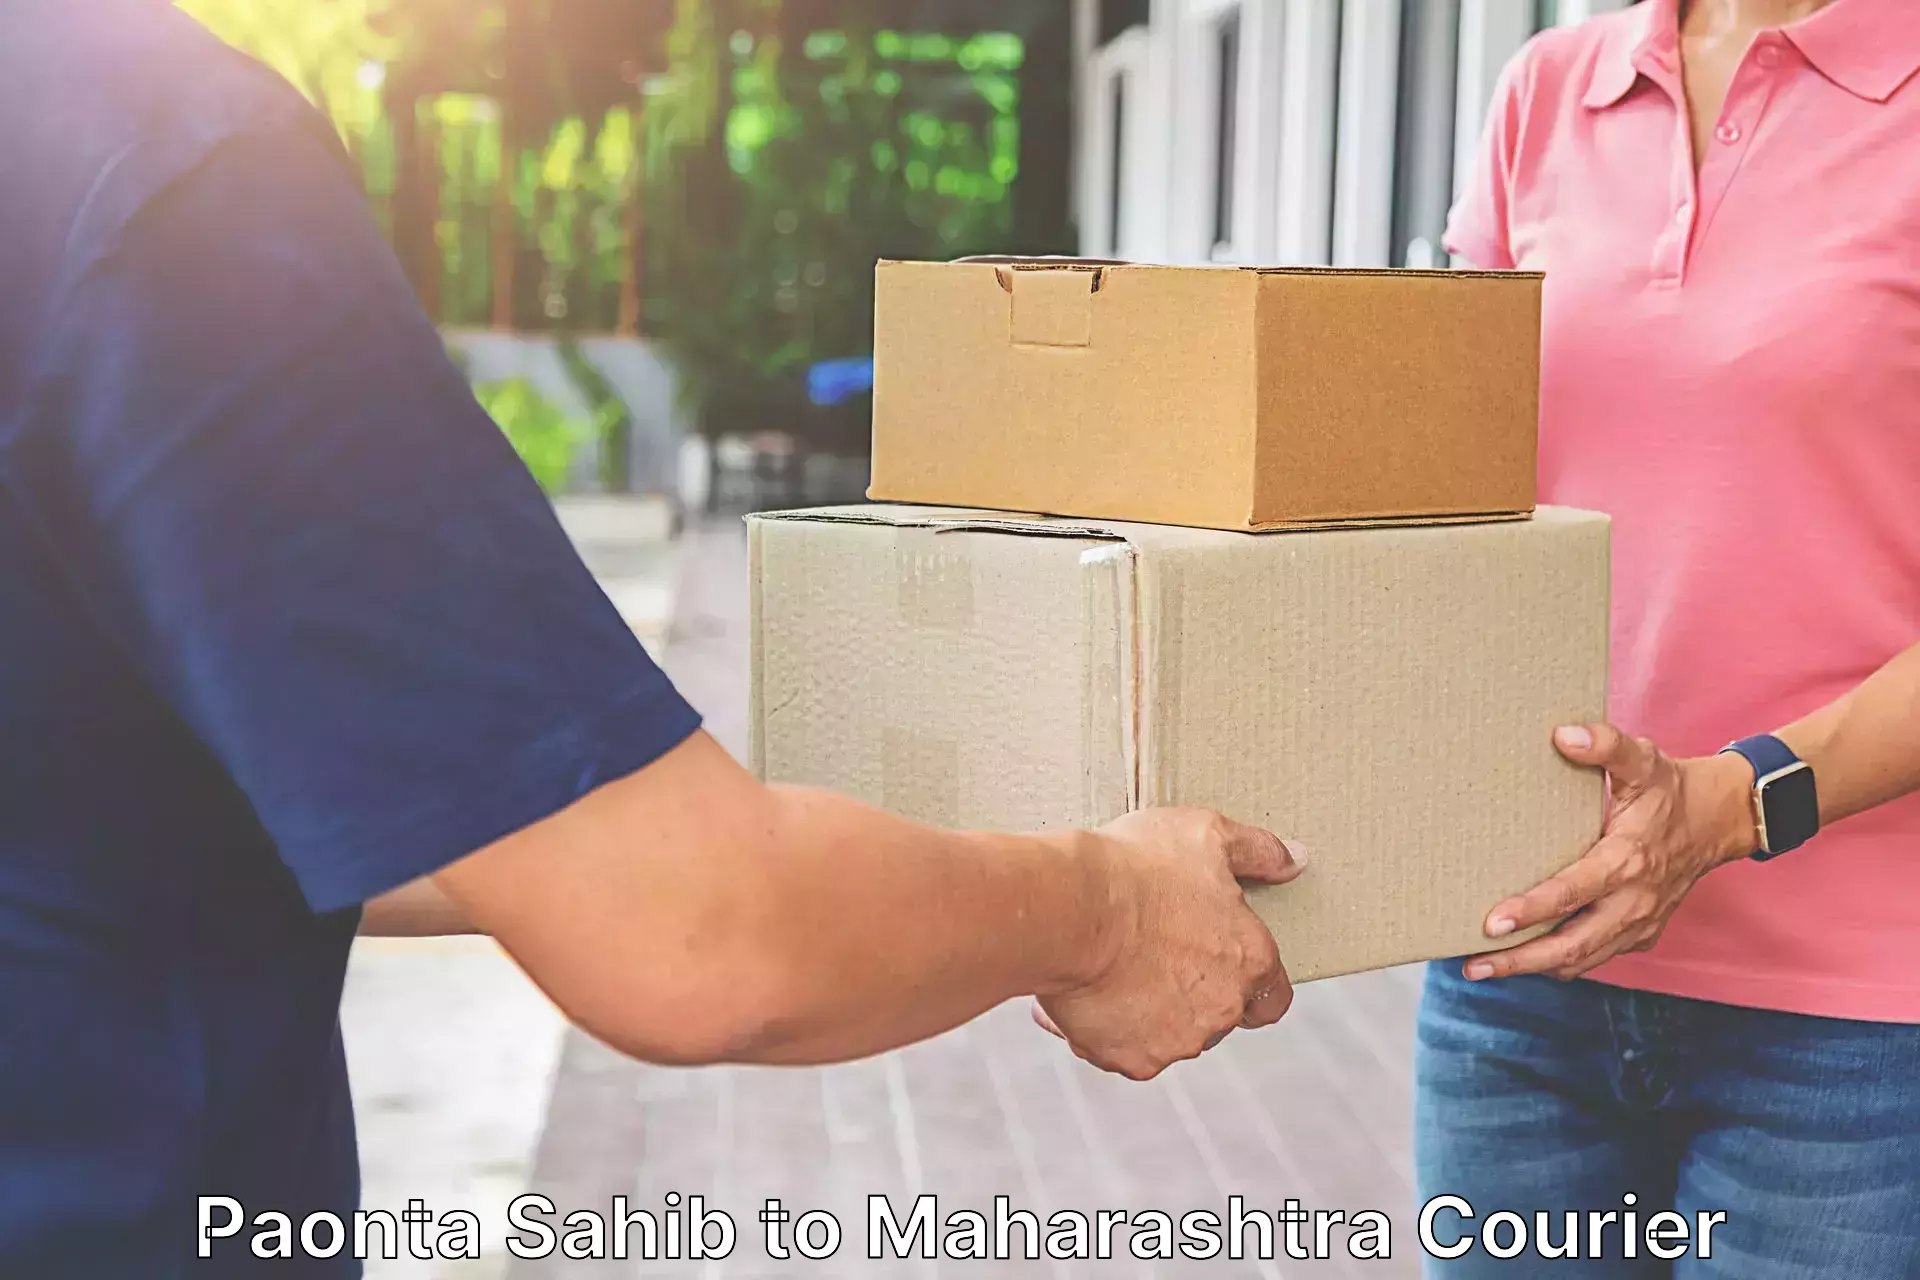 Courier service innovation in Paonta Sahib to Maharashtra